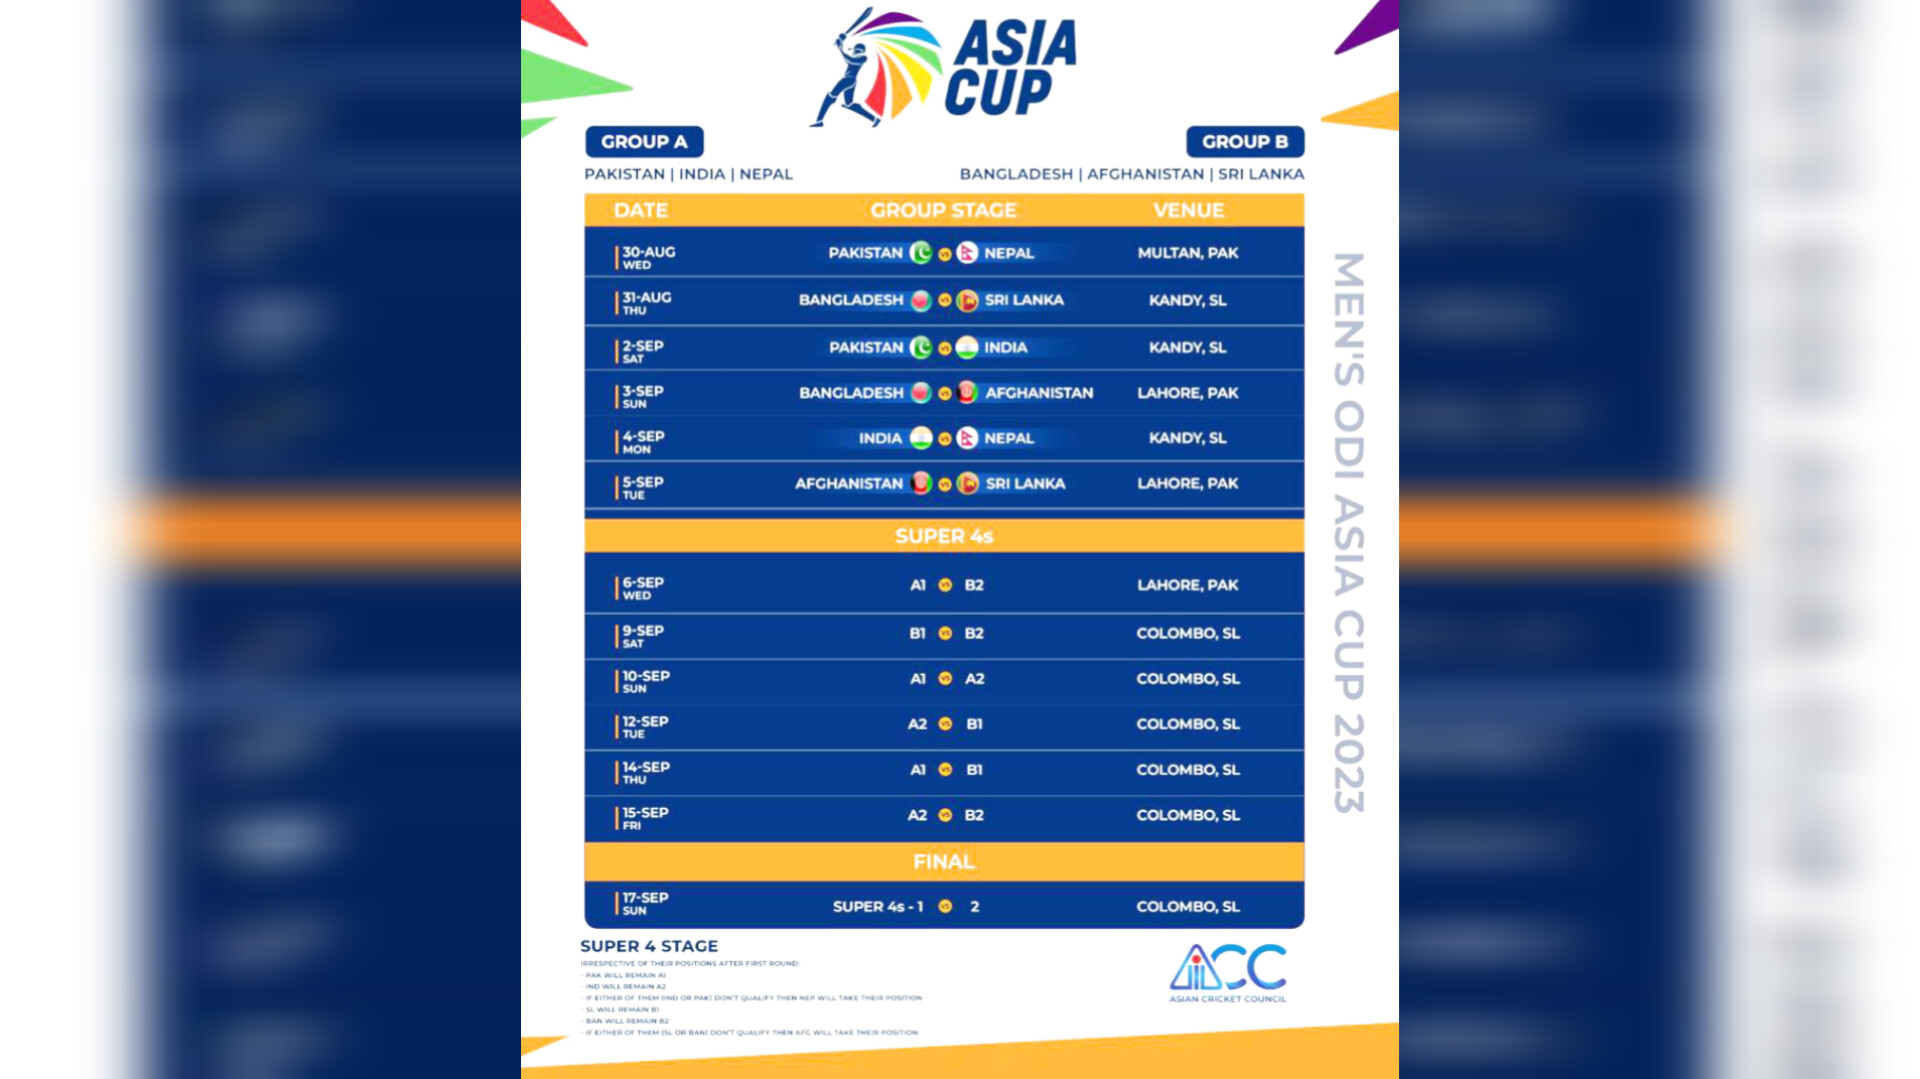 Asia Cup: 30 अगस्त से आगाज, श्रीलंका में खेले जाएंगे भारत के सभी मुकाबले, जानें पूरा शेड्यूल